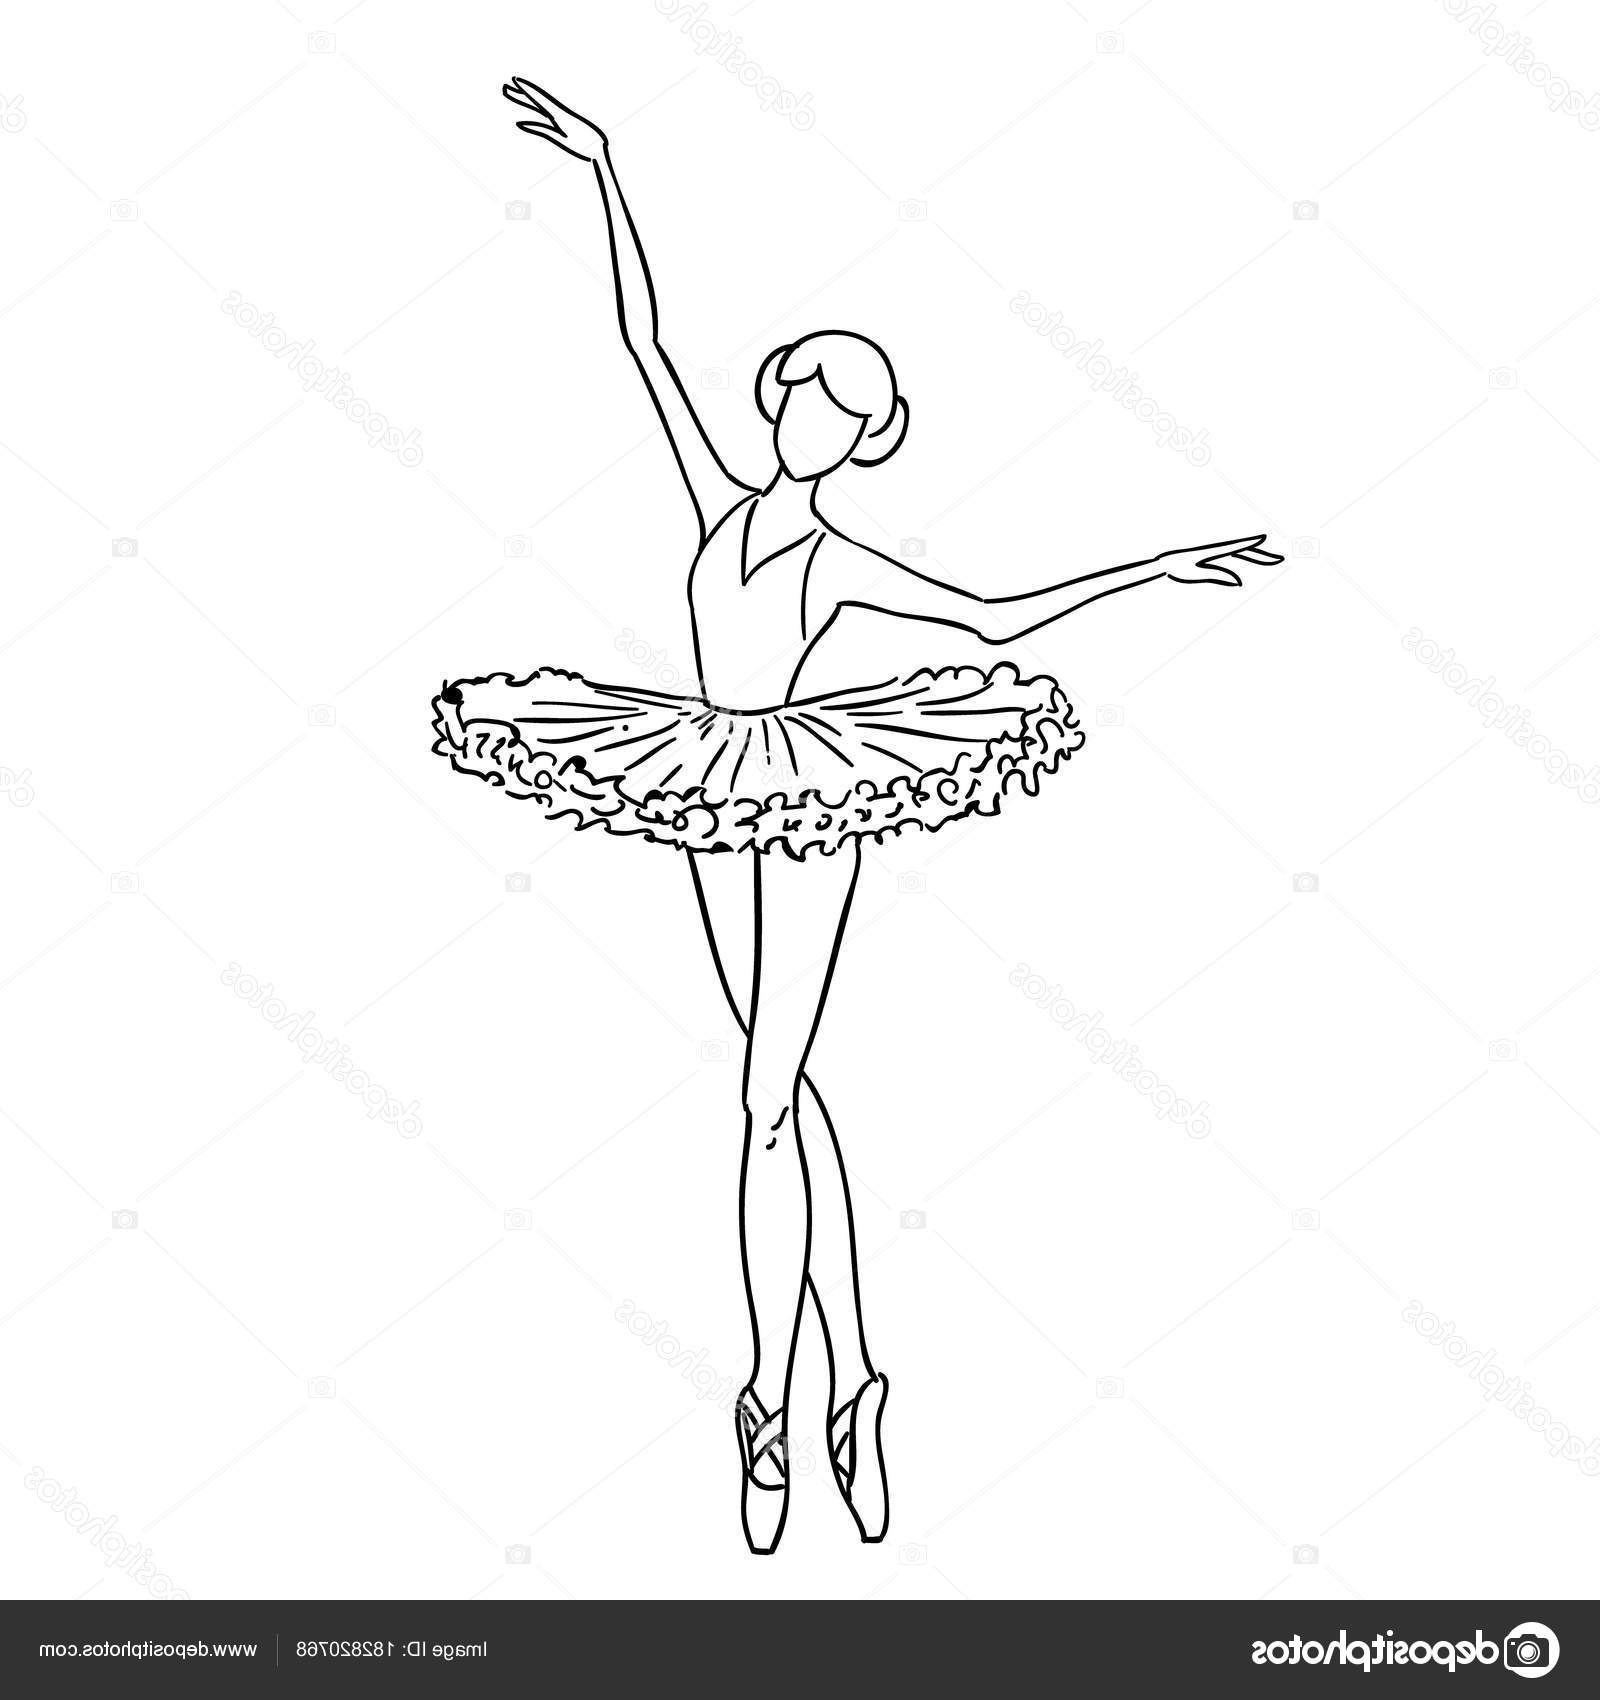 Dessin Ballerine Inspirant Stock Illustration D’un Contour De Croquis Dessin D’un Doodle